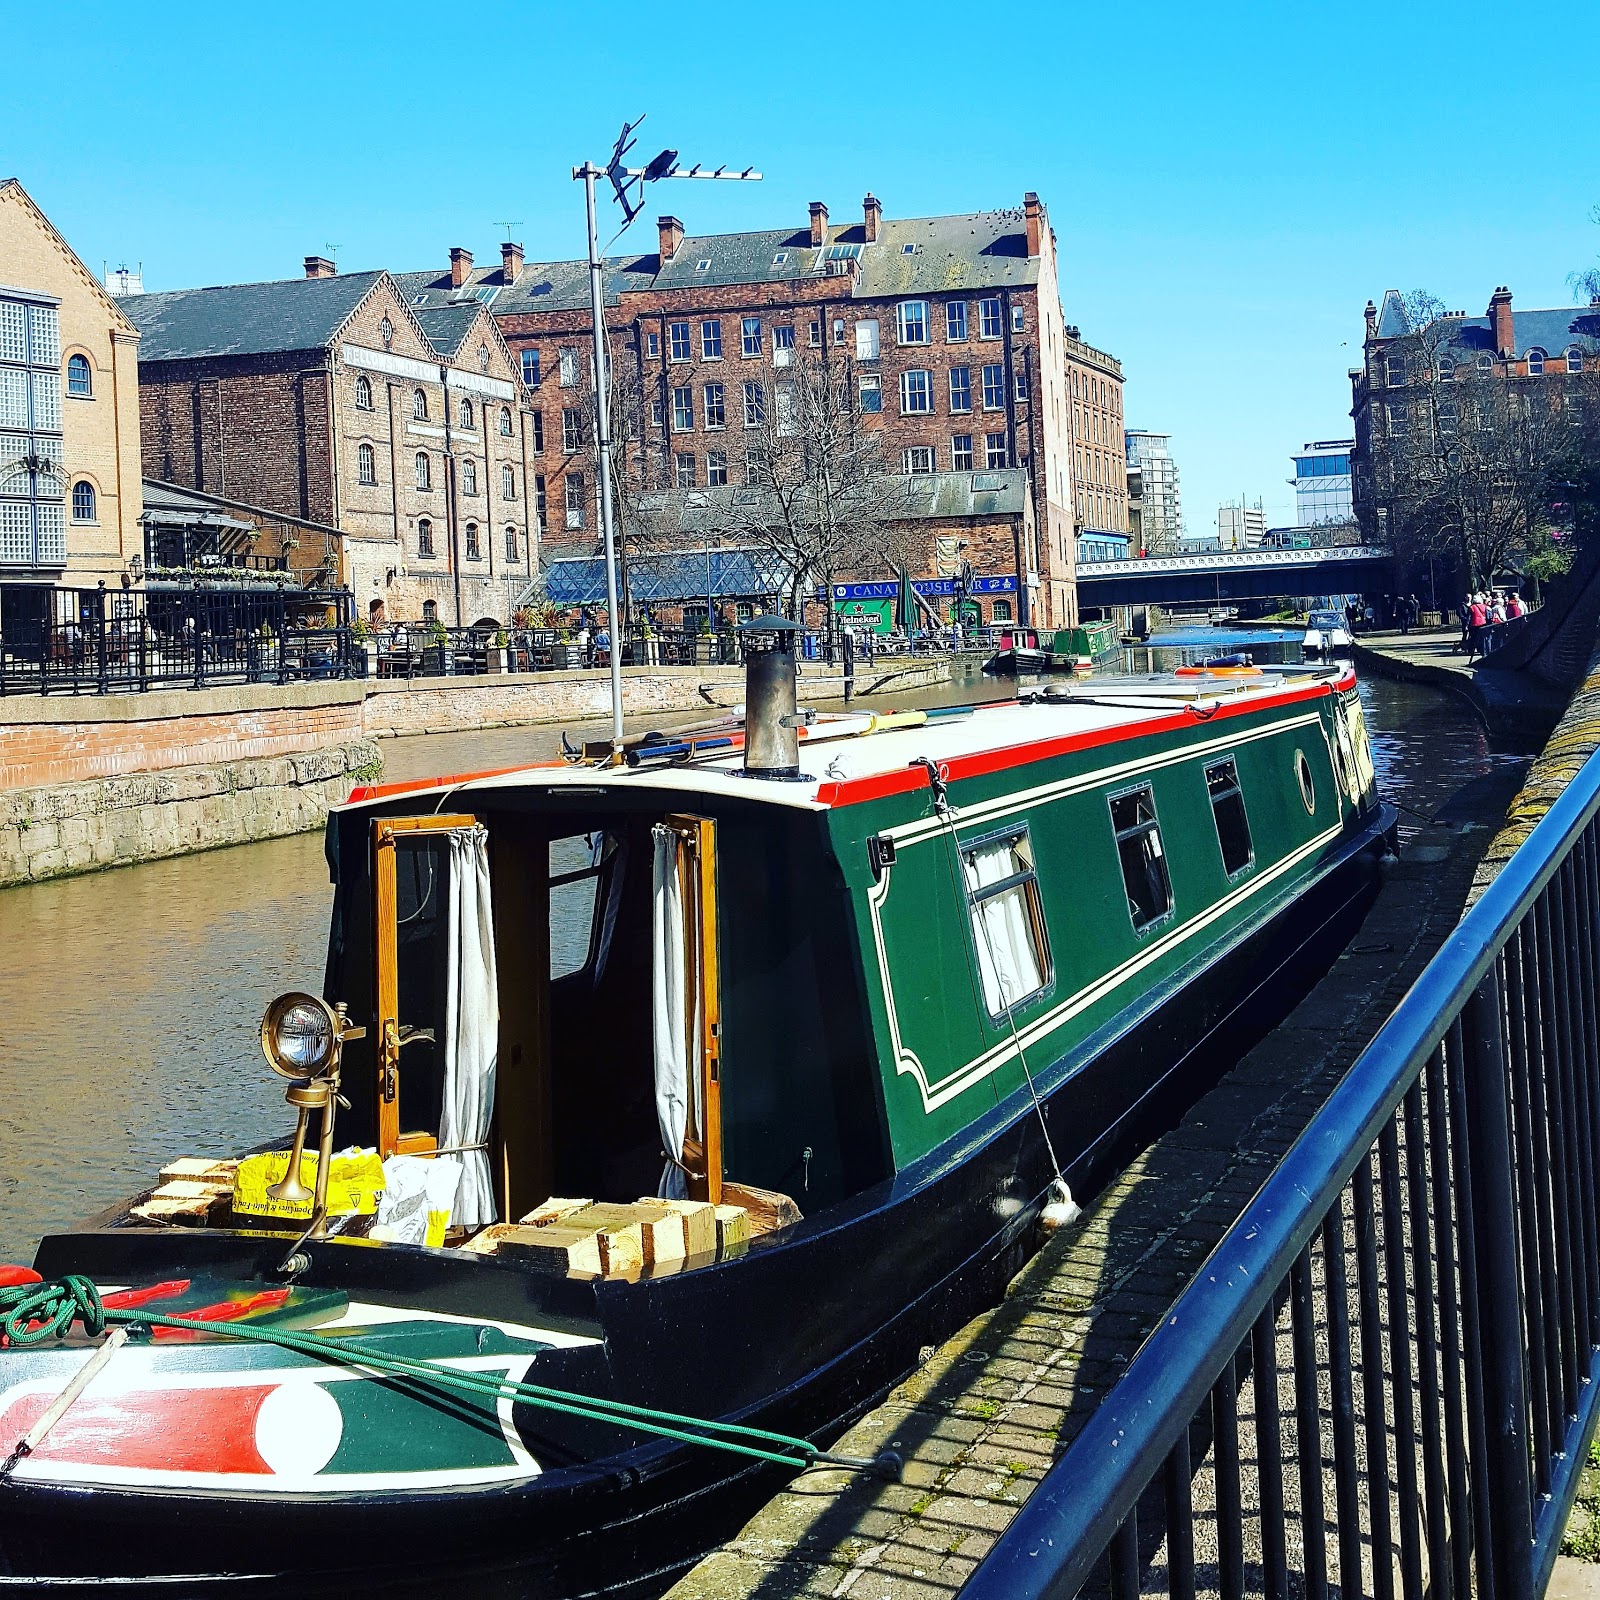 Nottingham Canal: My Sunday Photo